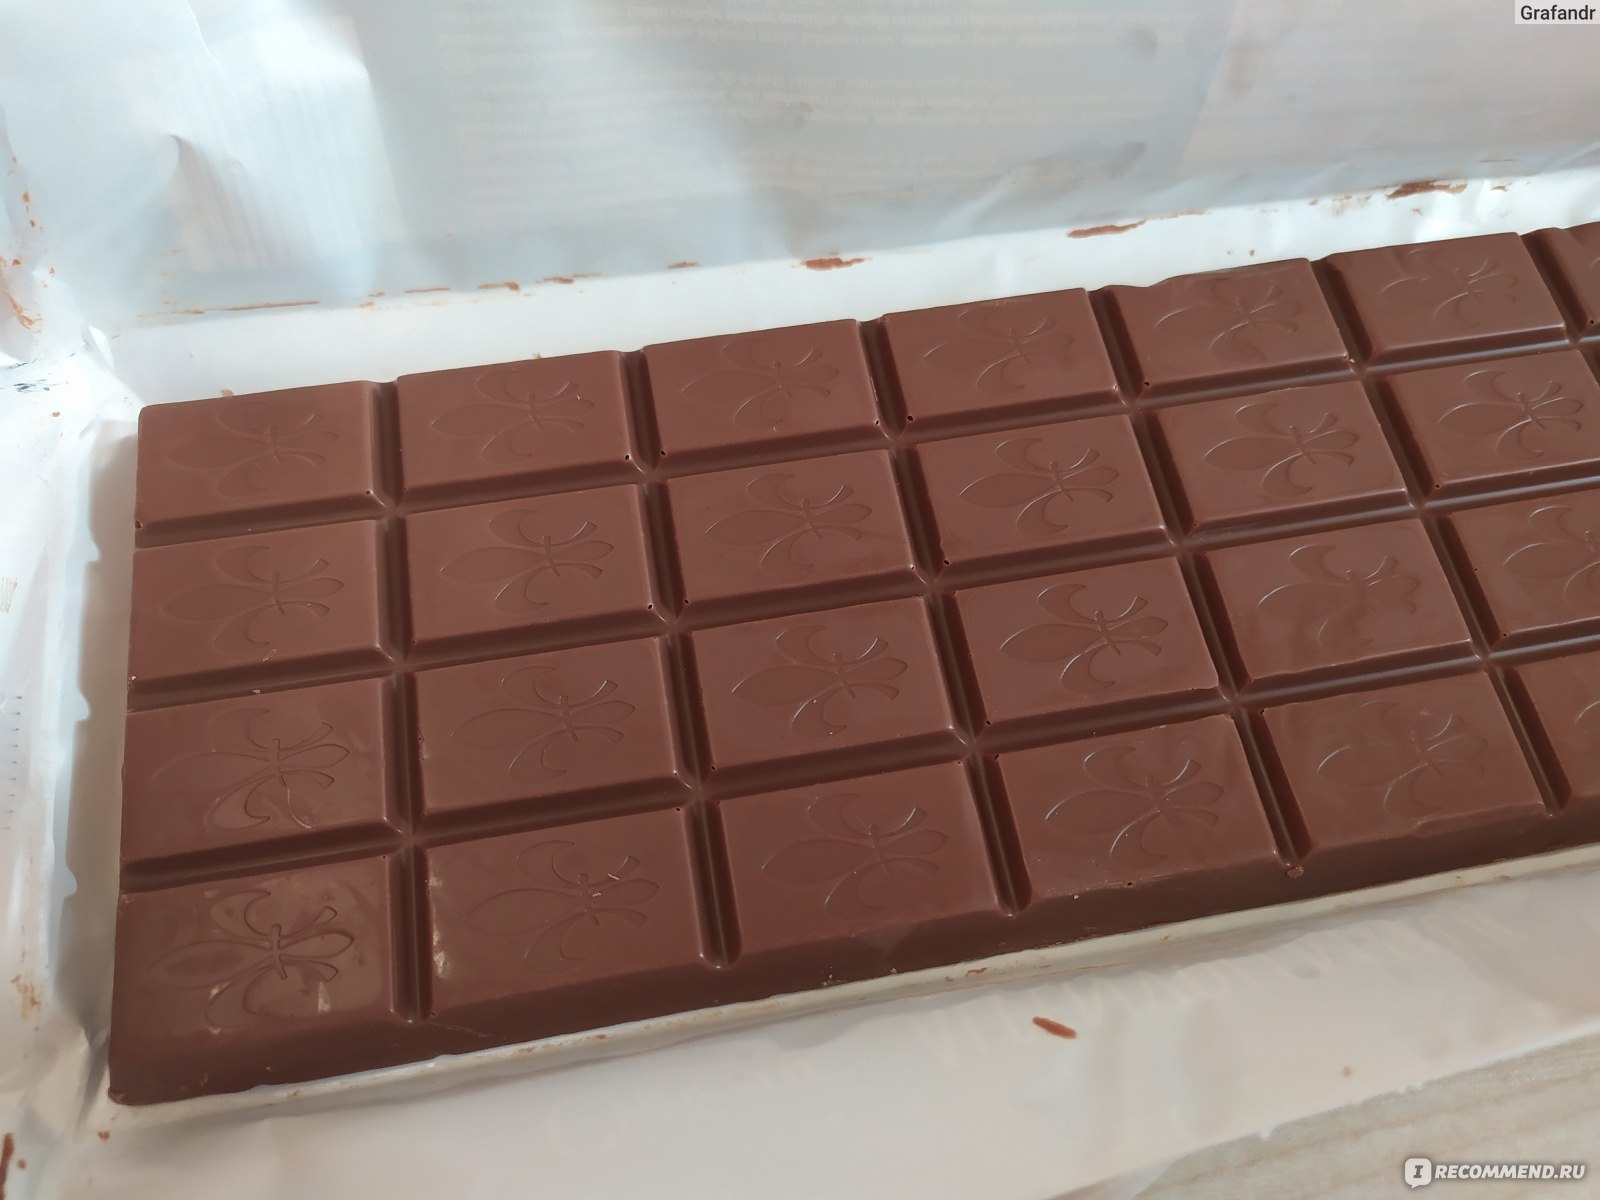 Большая плитка шоколада